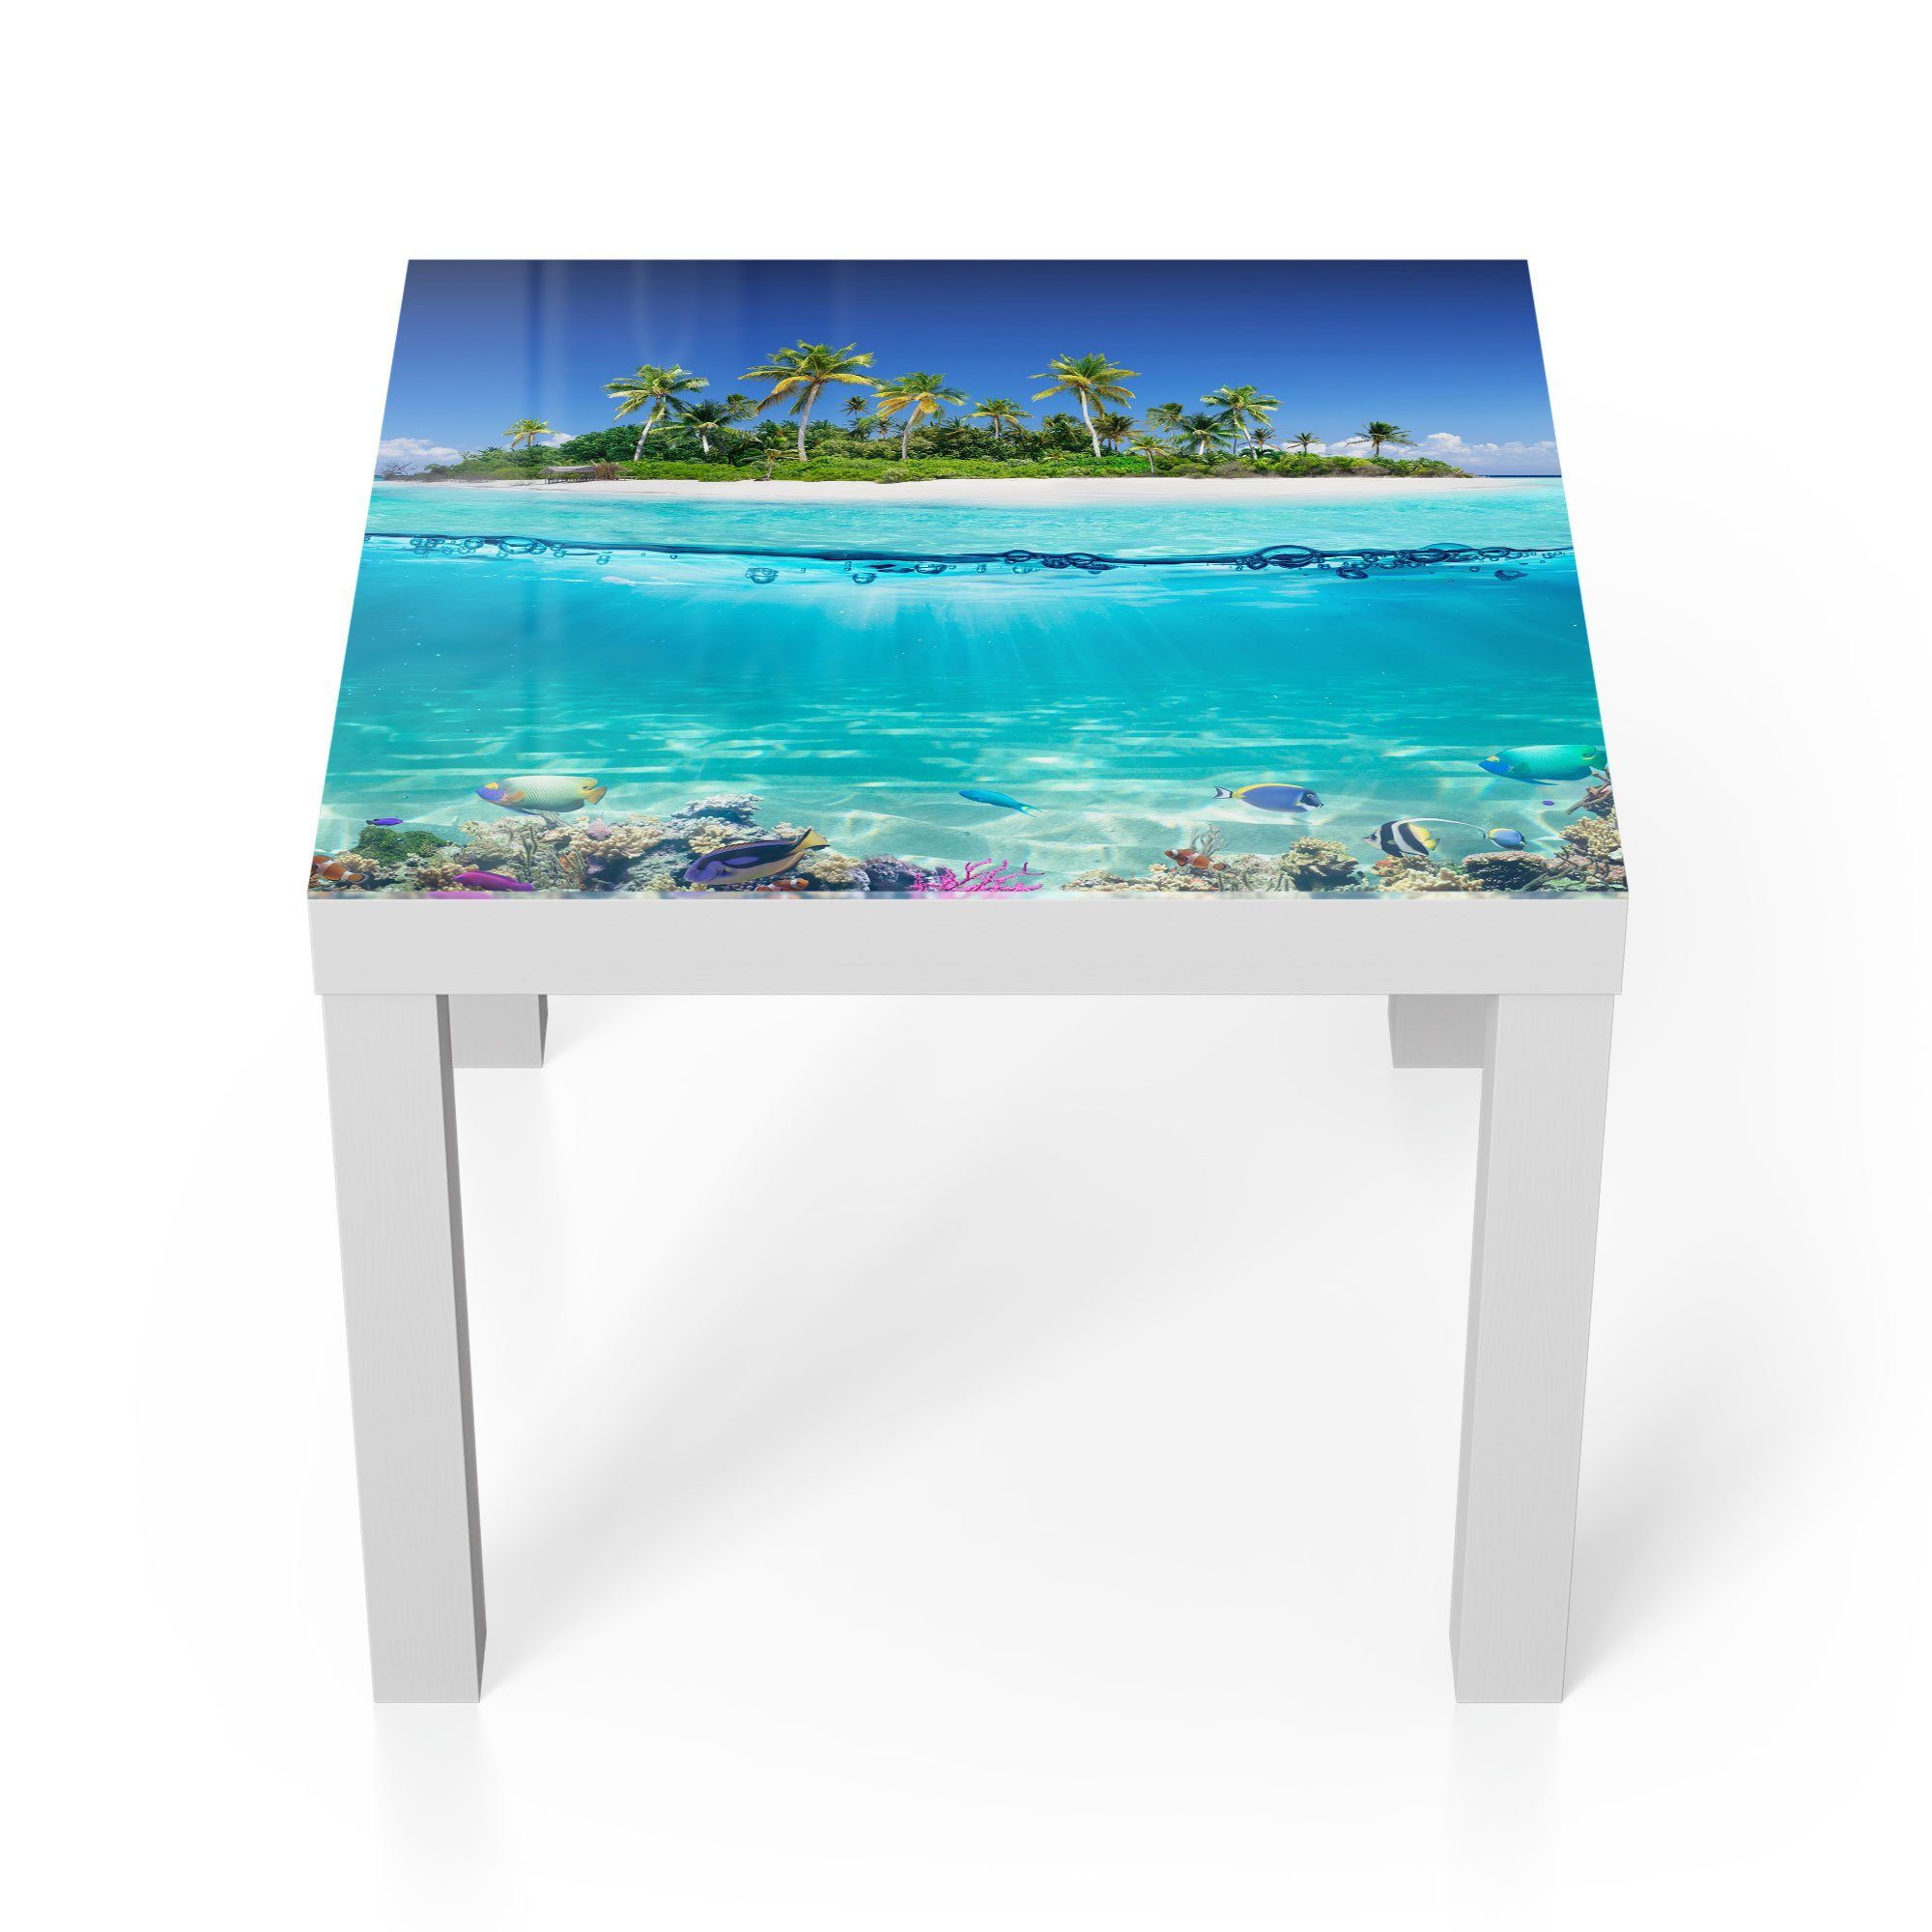 DEQORI Couchtisch 'Insel im tropischen Meer', Glas Beistelltisch Glastisch modern Weiß